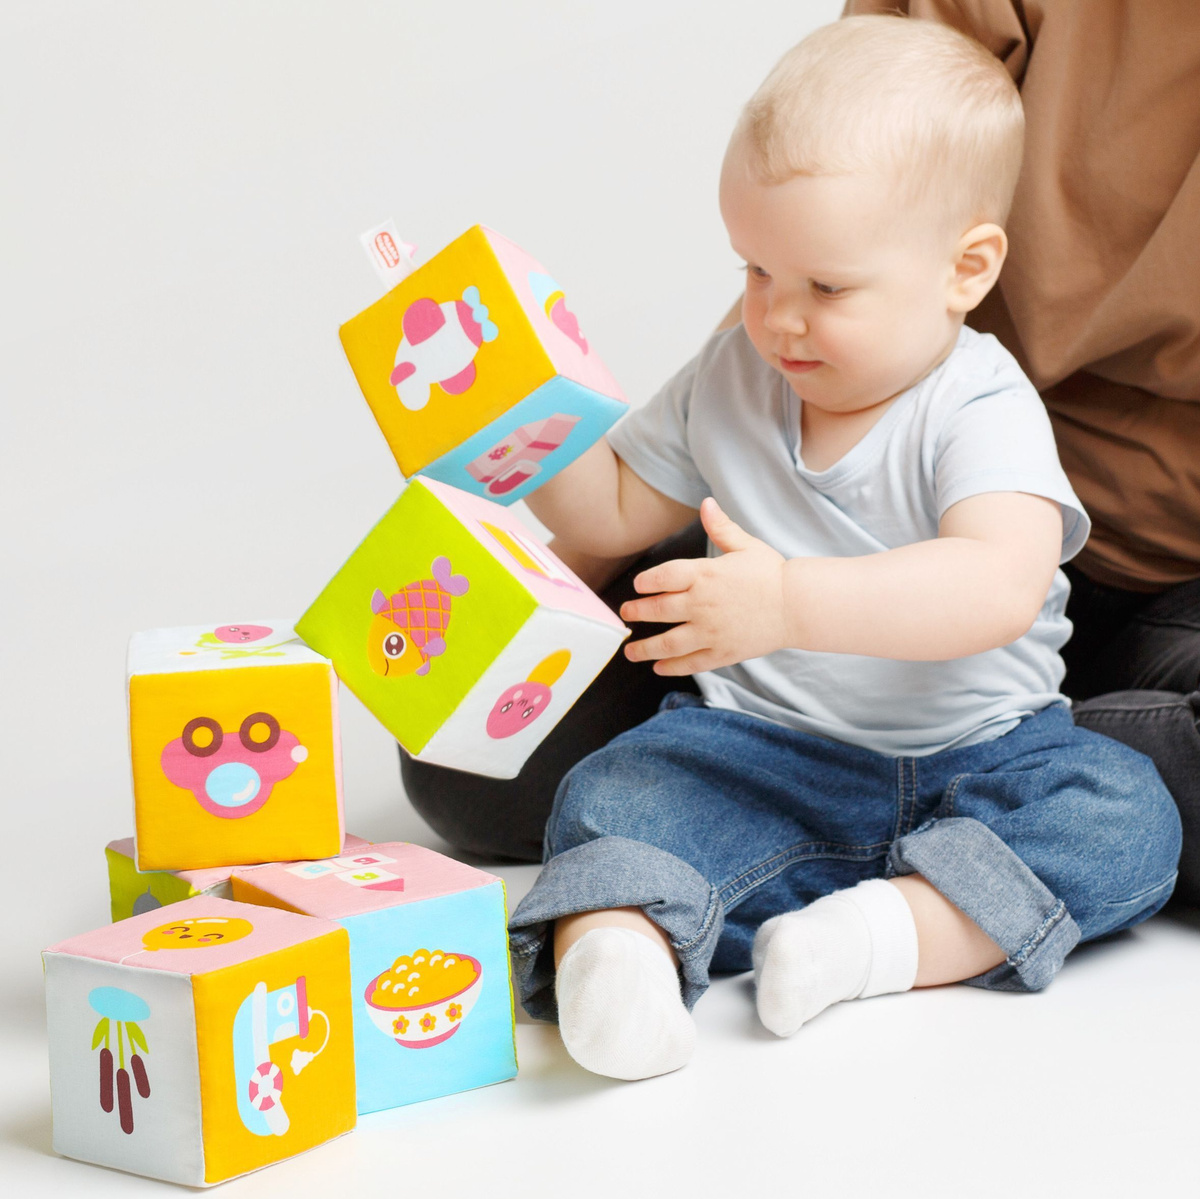 Кубики для малышей мягкие развивающие детские Мякиши Малышарики 6 кубиков 10*10 Россия 0+